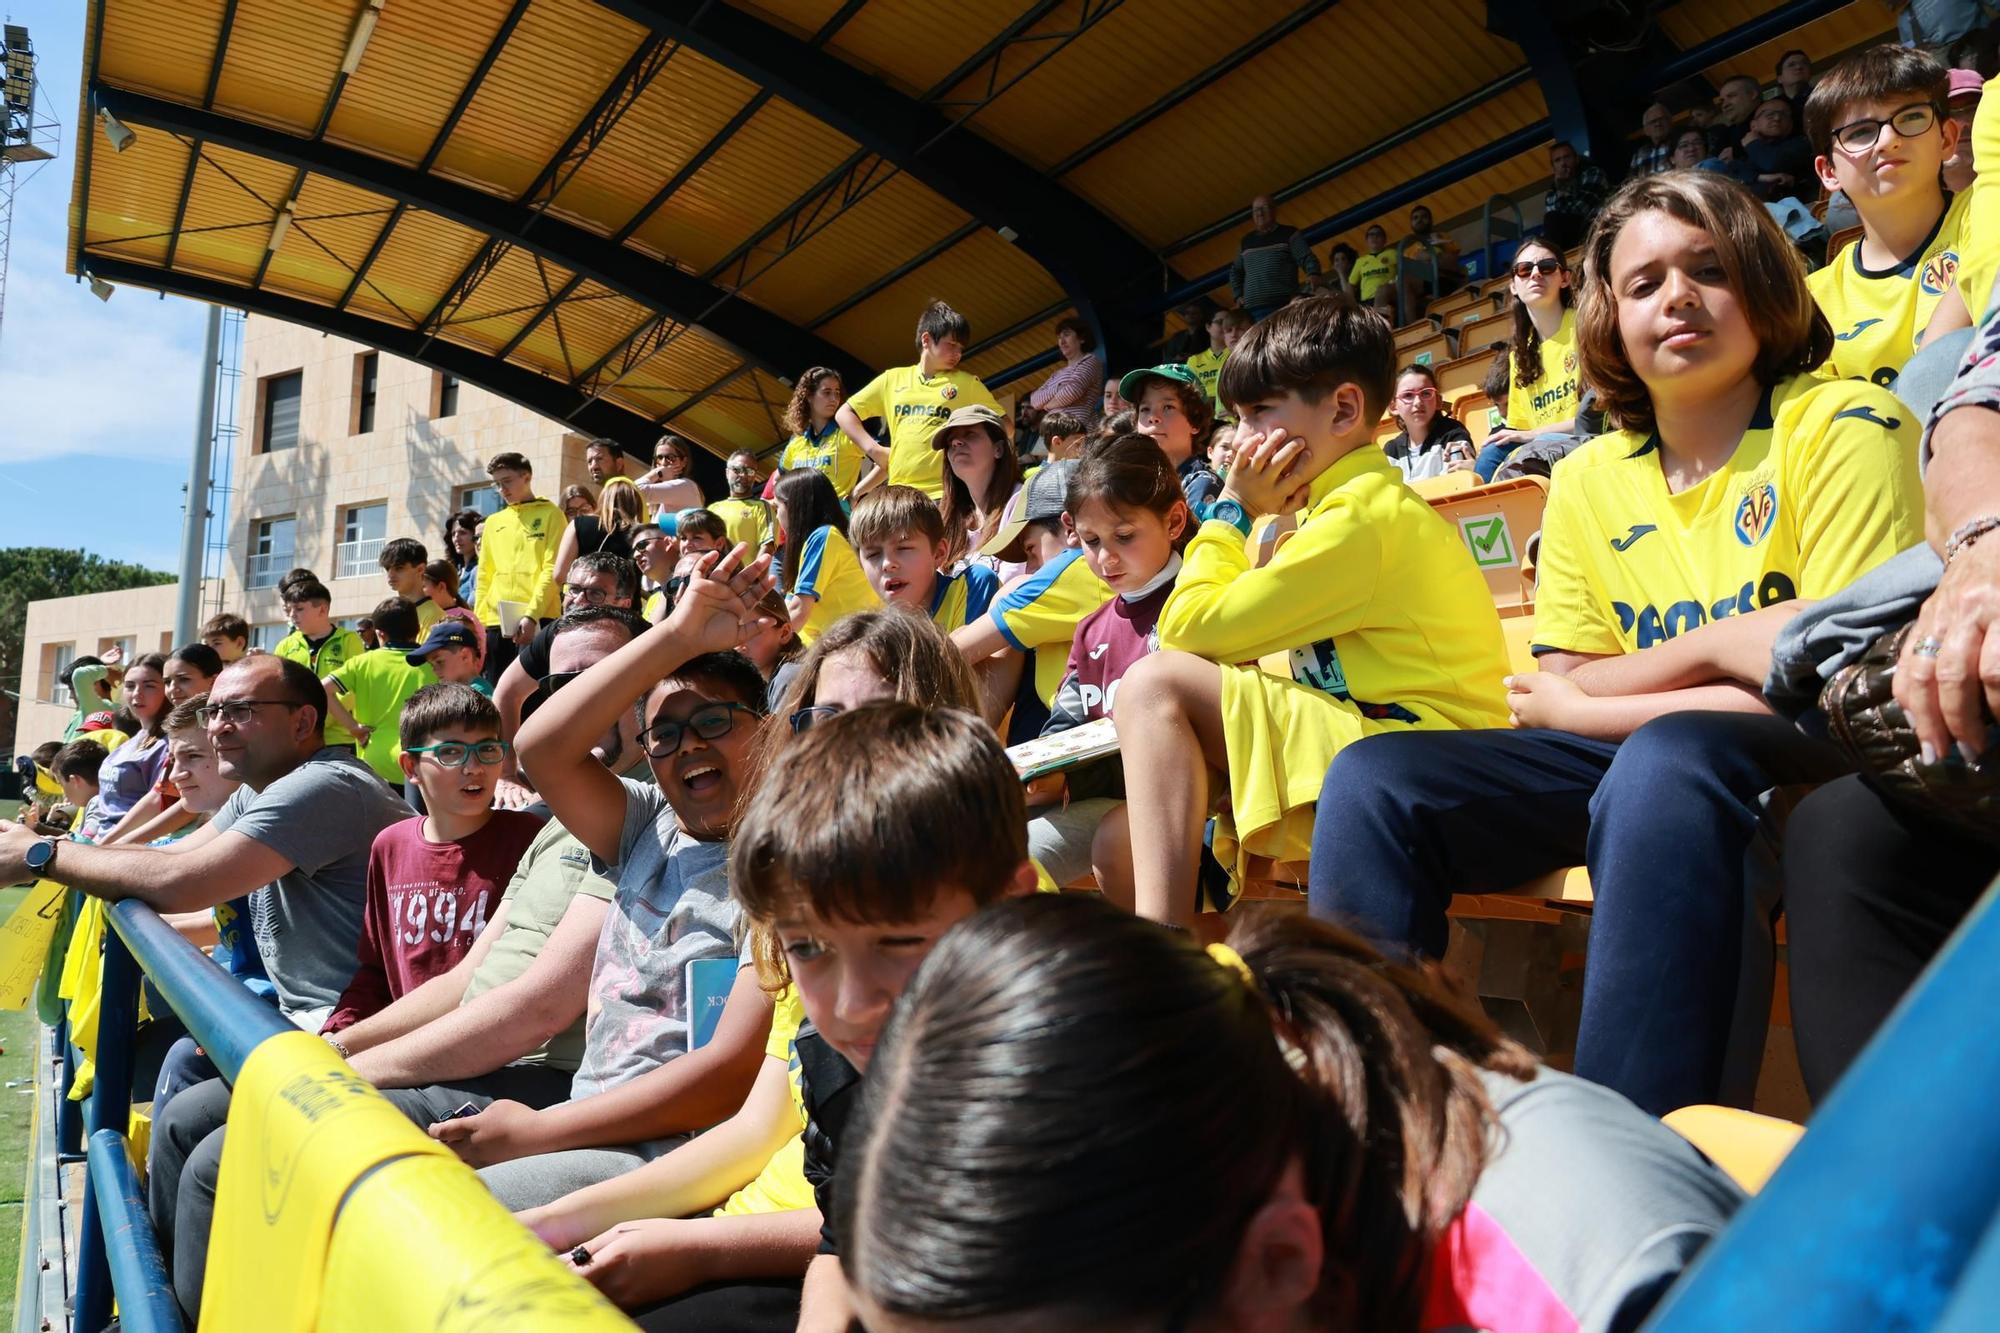 Galería | La afición del Villarreal disfruta con sus ídolos en el entrenamiento de puertas abiertas